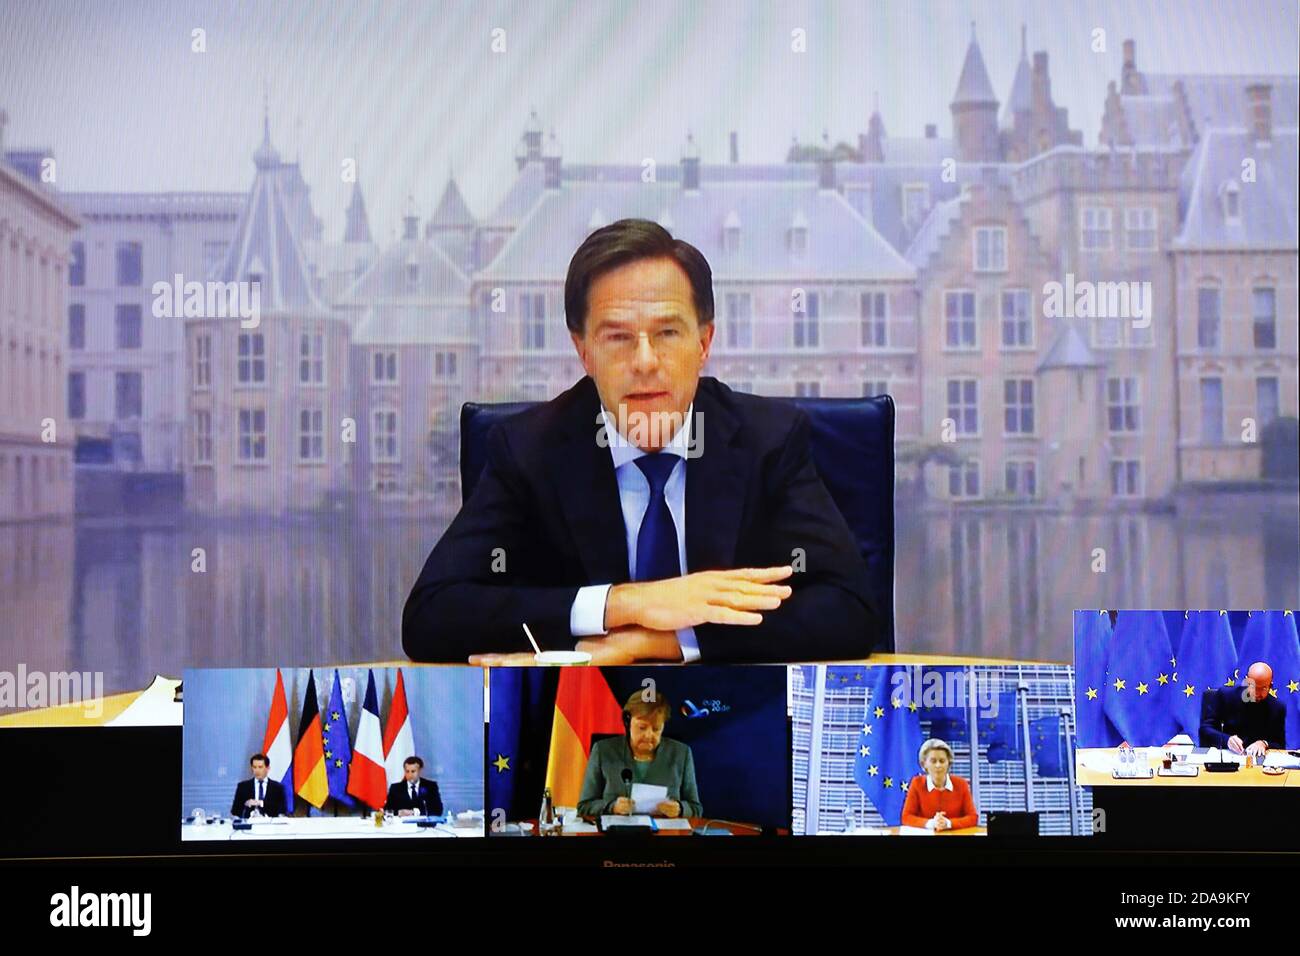 (201111) -- BRÜSSEL, 11. November 2020 (Xinhua) -- Dieses Bild wurde von einem Bildschirm aufgenommen und zeigt den niederländischen Premierminister Mark Rutte (up), der am 10. November 2020 an einer Anti-Terrorismus-Videokonferenz in Brüssel, Belgien, teilnahm. Die Europäische Union (EU) veranstaltete am Dienstag eine Videokonferenz mit Österreich, Deutschland, Frankreich und den Niederlanden zur Bekämpfung des Terrorismus. (Europäische Union/Handout über Xinhua) Stockfoto